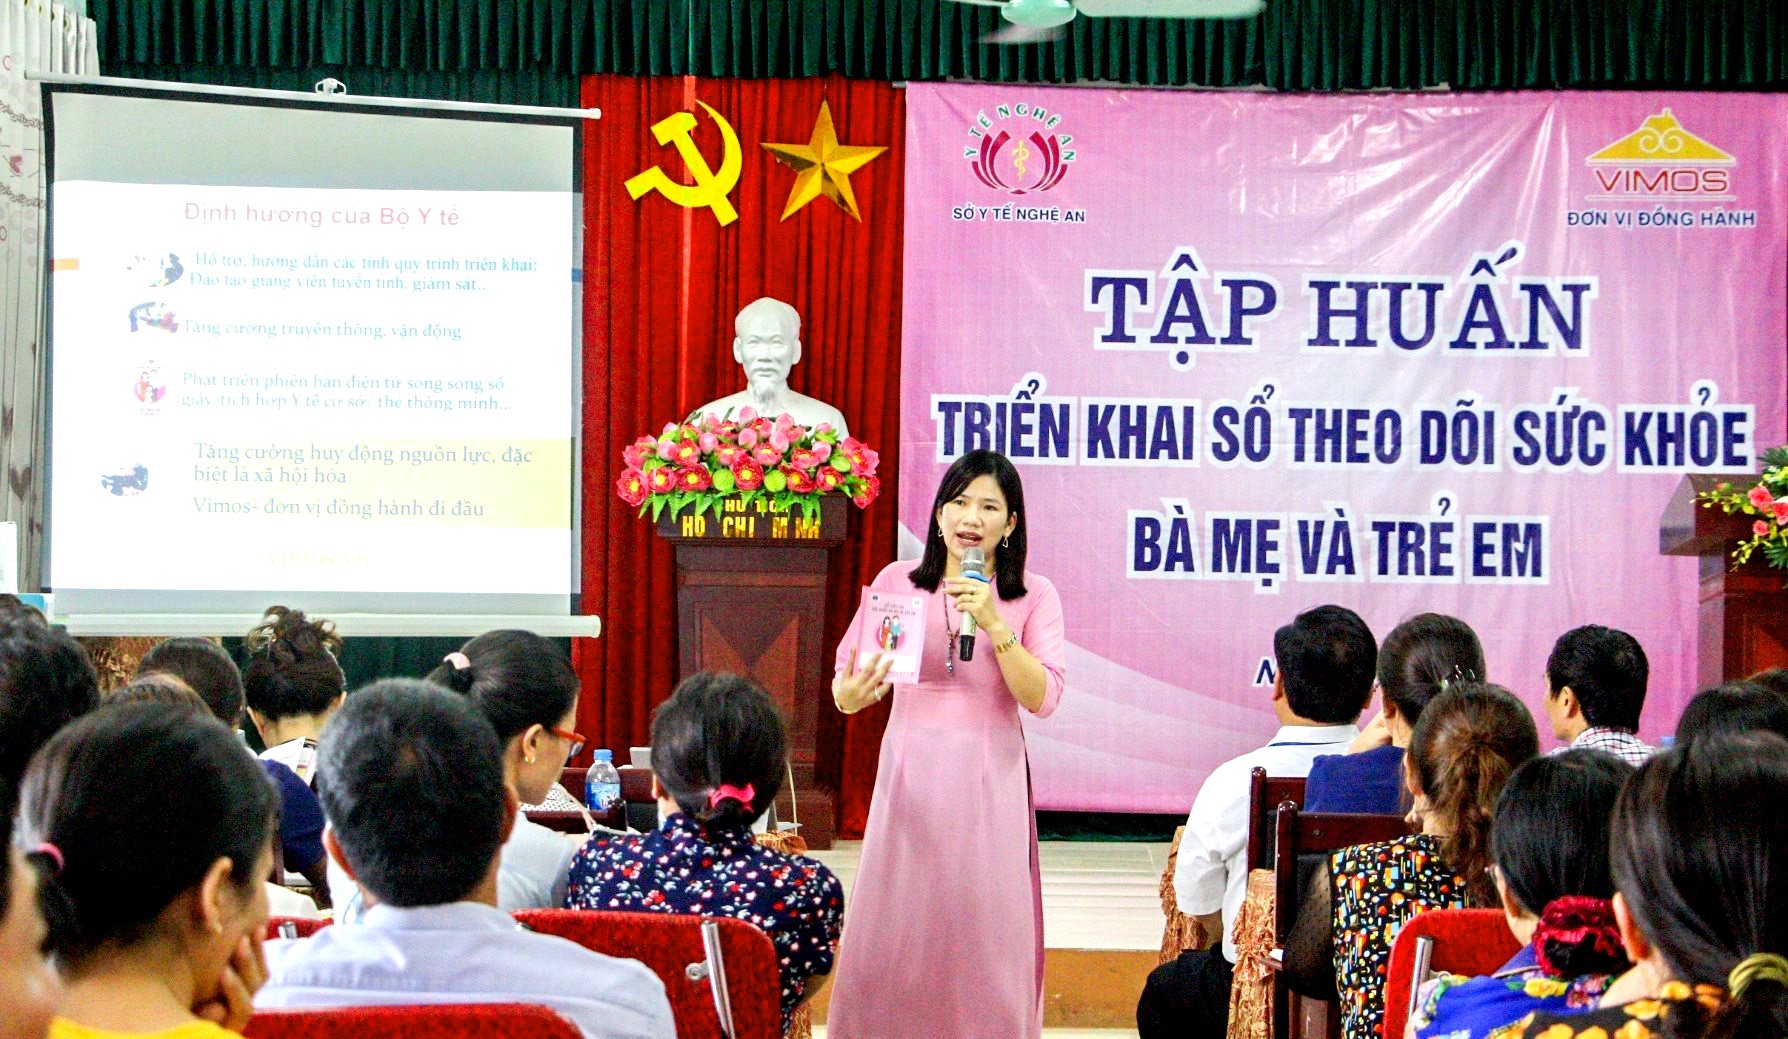 Chị Thanh Hòa luôn tận tâm với những hoạt đồng cộng đồng